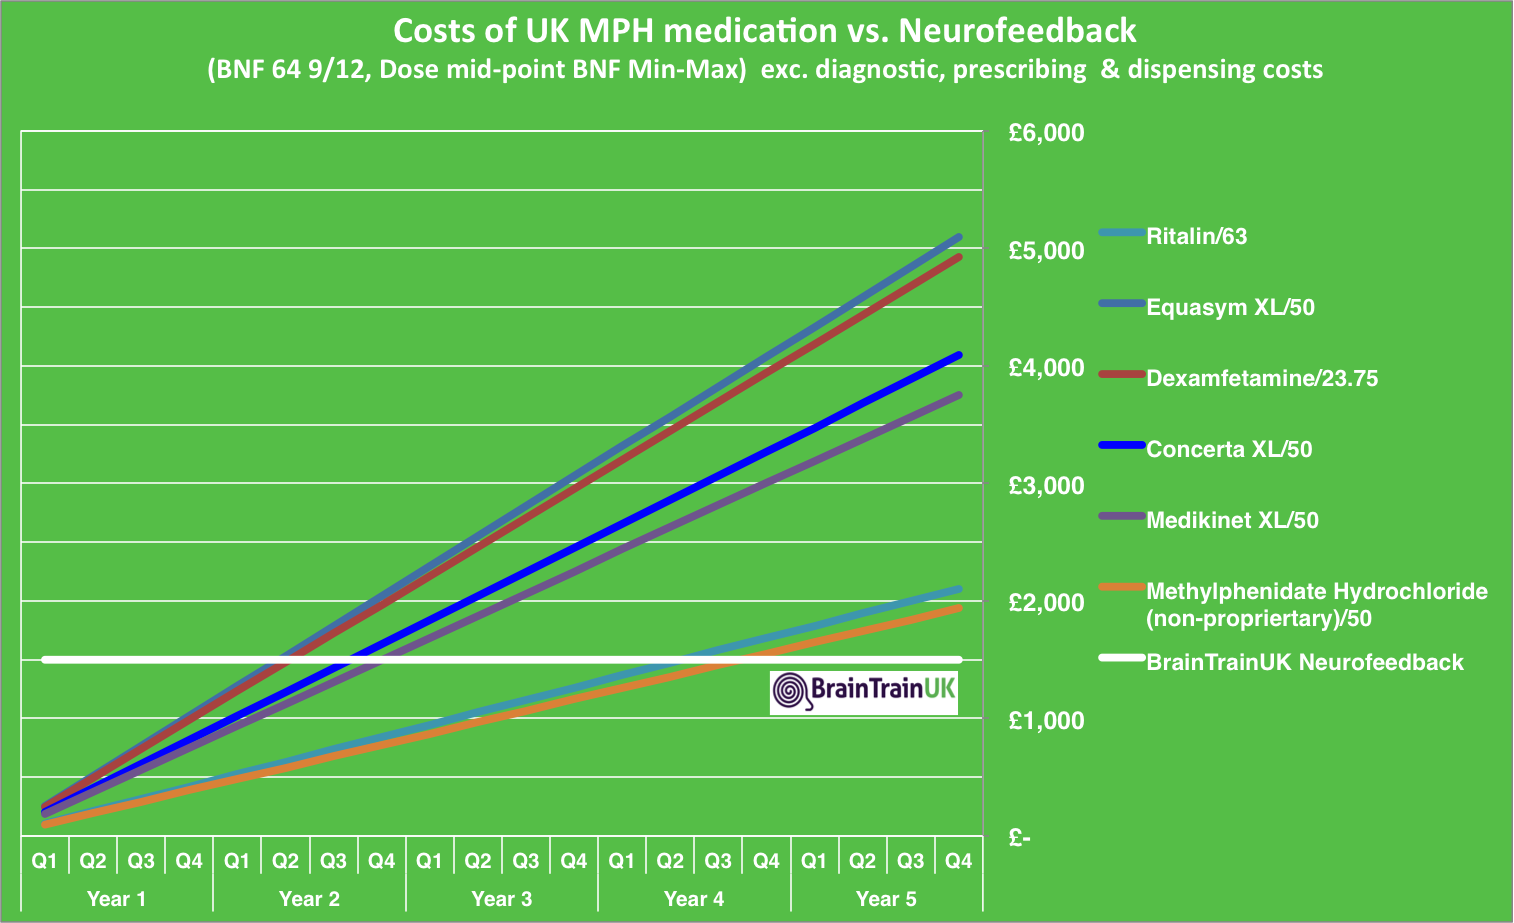 Cost of medication vs. neurofeedback